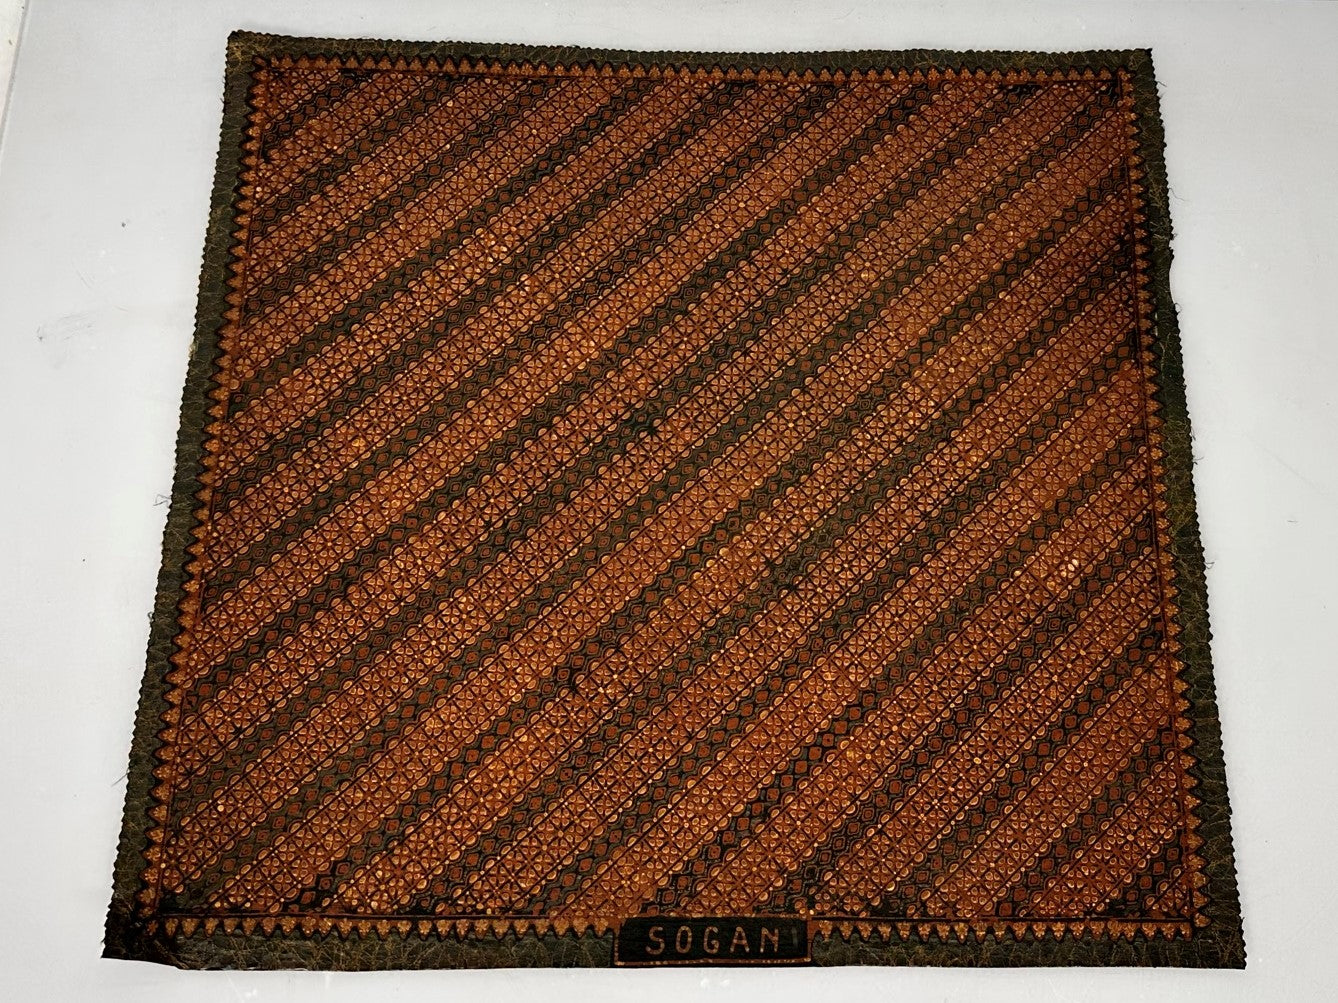 20x21 Vintage "Sogan" Batik Cloth Square